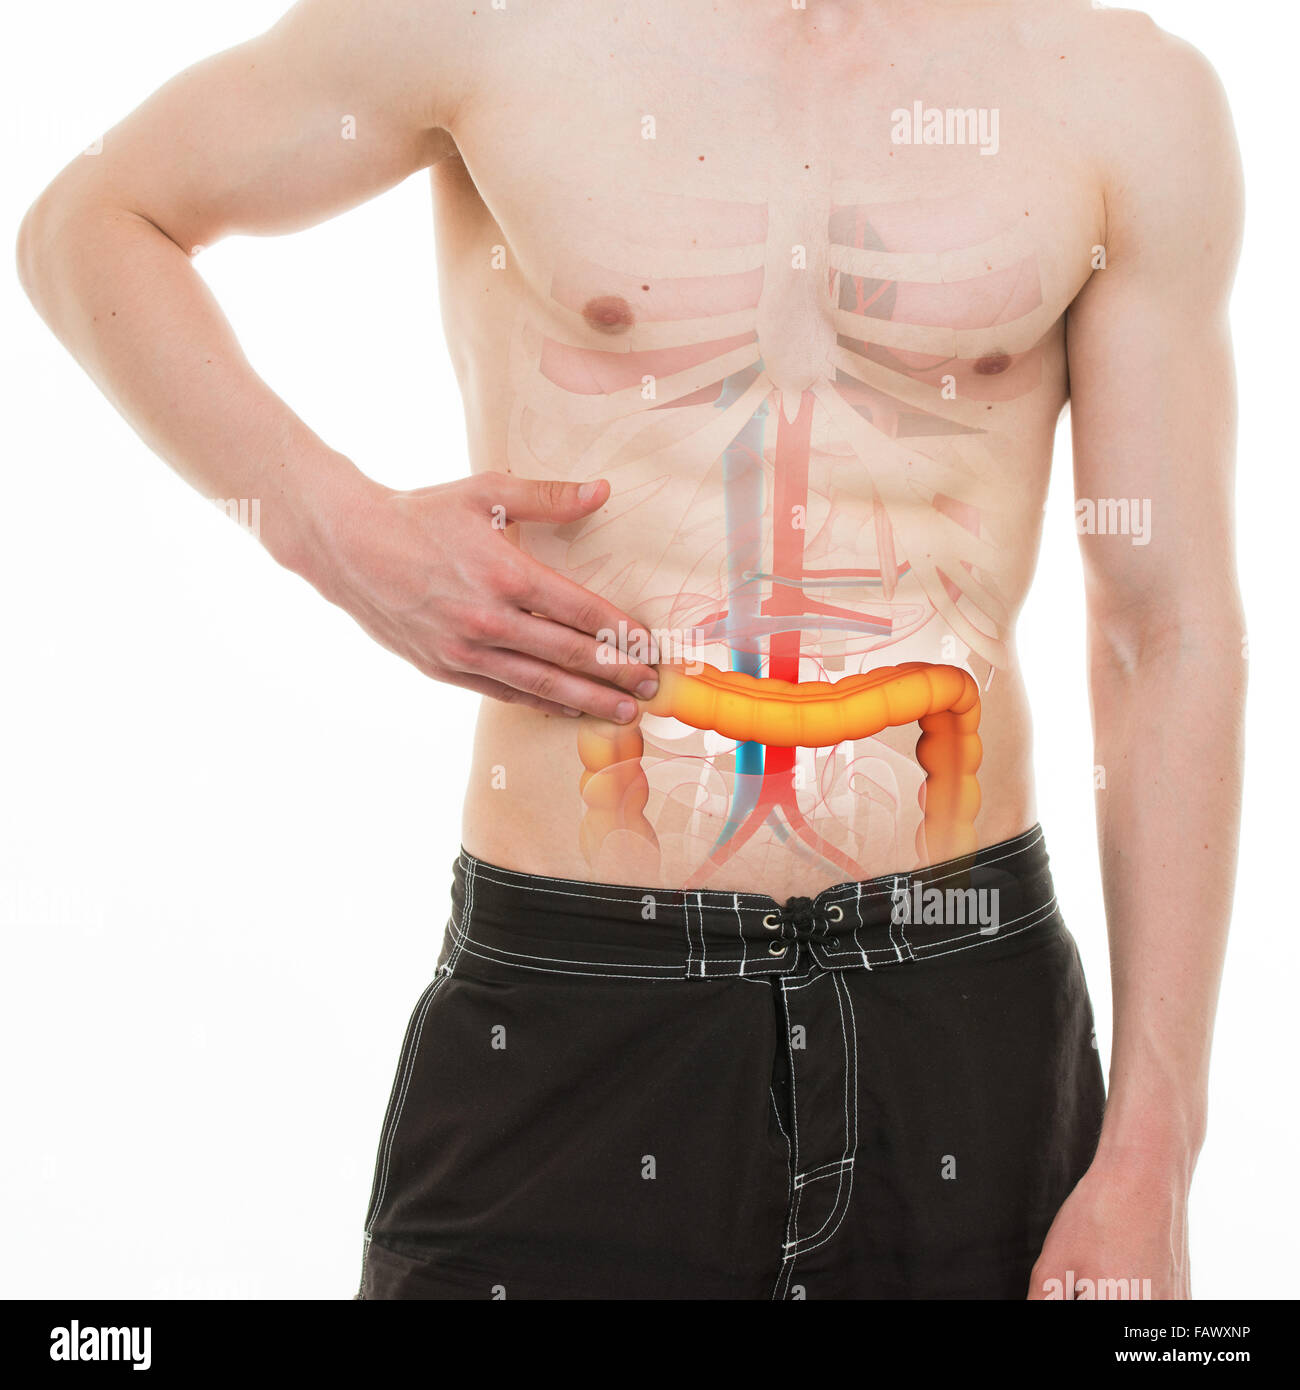 Douleur abdominale - Colon intestin douleur côté droit - anatomie réelle  Photo Stock - Alamy